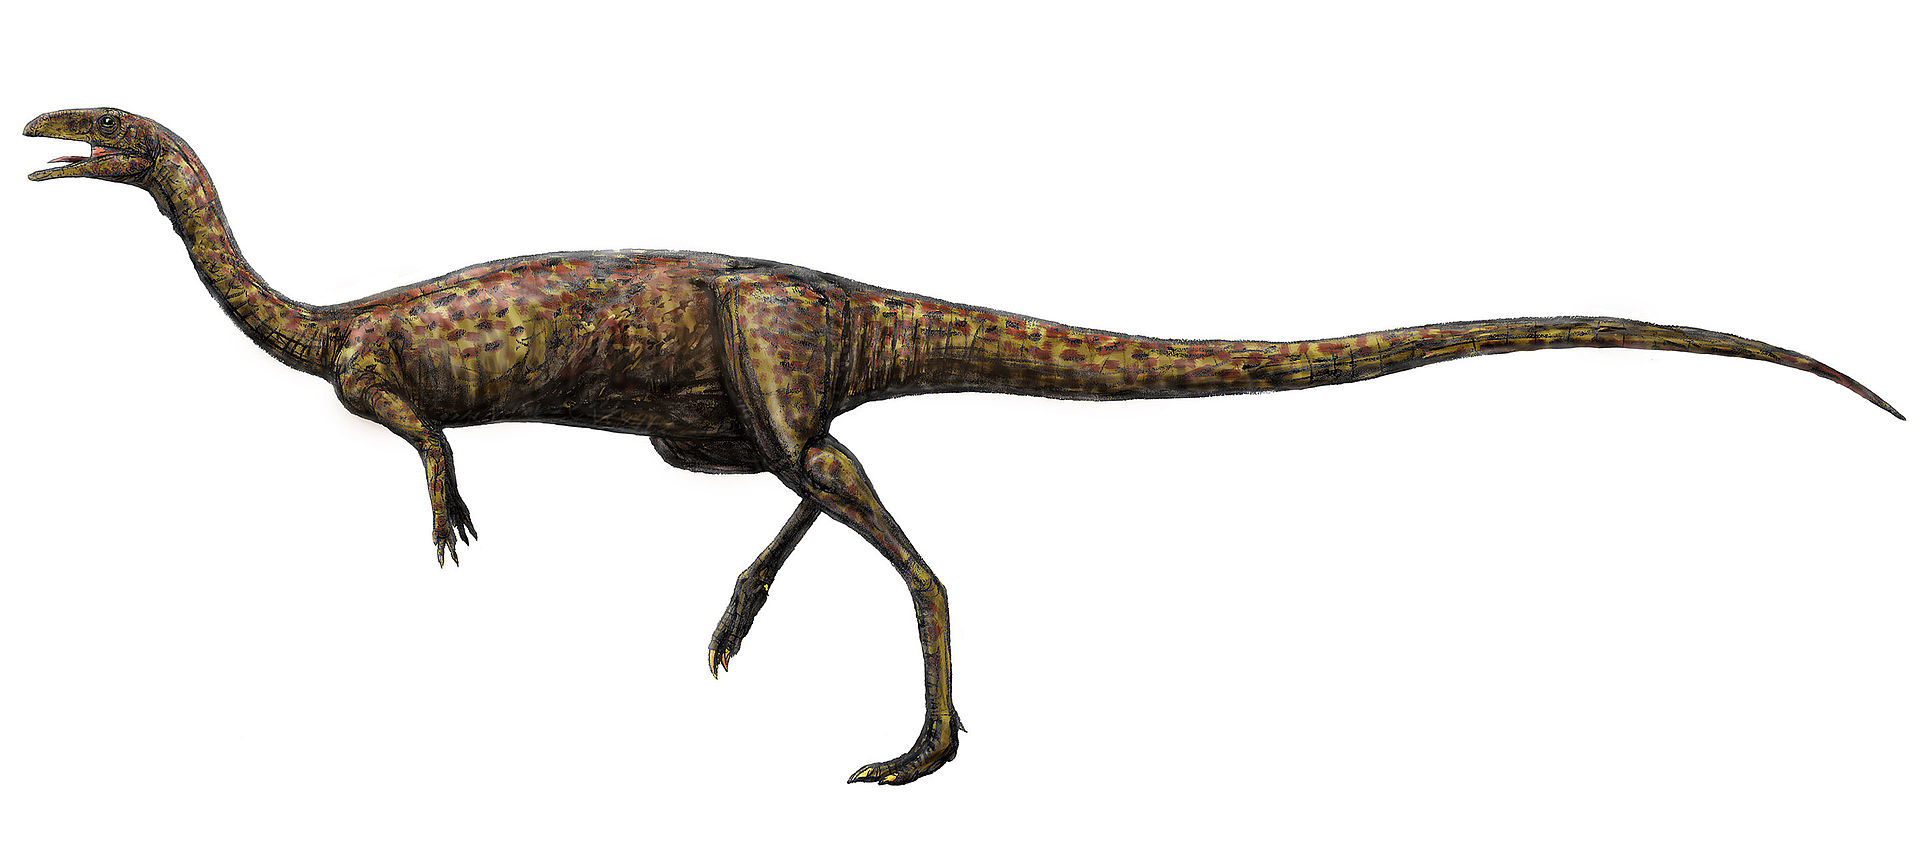 Elaphrosaurus bambergi byl středně velký, extrémně štíhlý a lehkonohý teropod. Obýval oblasti dnešní východní Afriky a možná i Severní Ameriky a některých dalších částí světa v období svrchní jury. Žil v době před 157 až 152 miliony let a byl tak sou